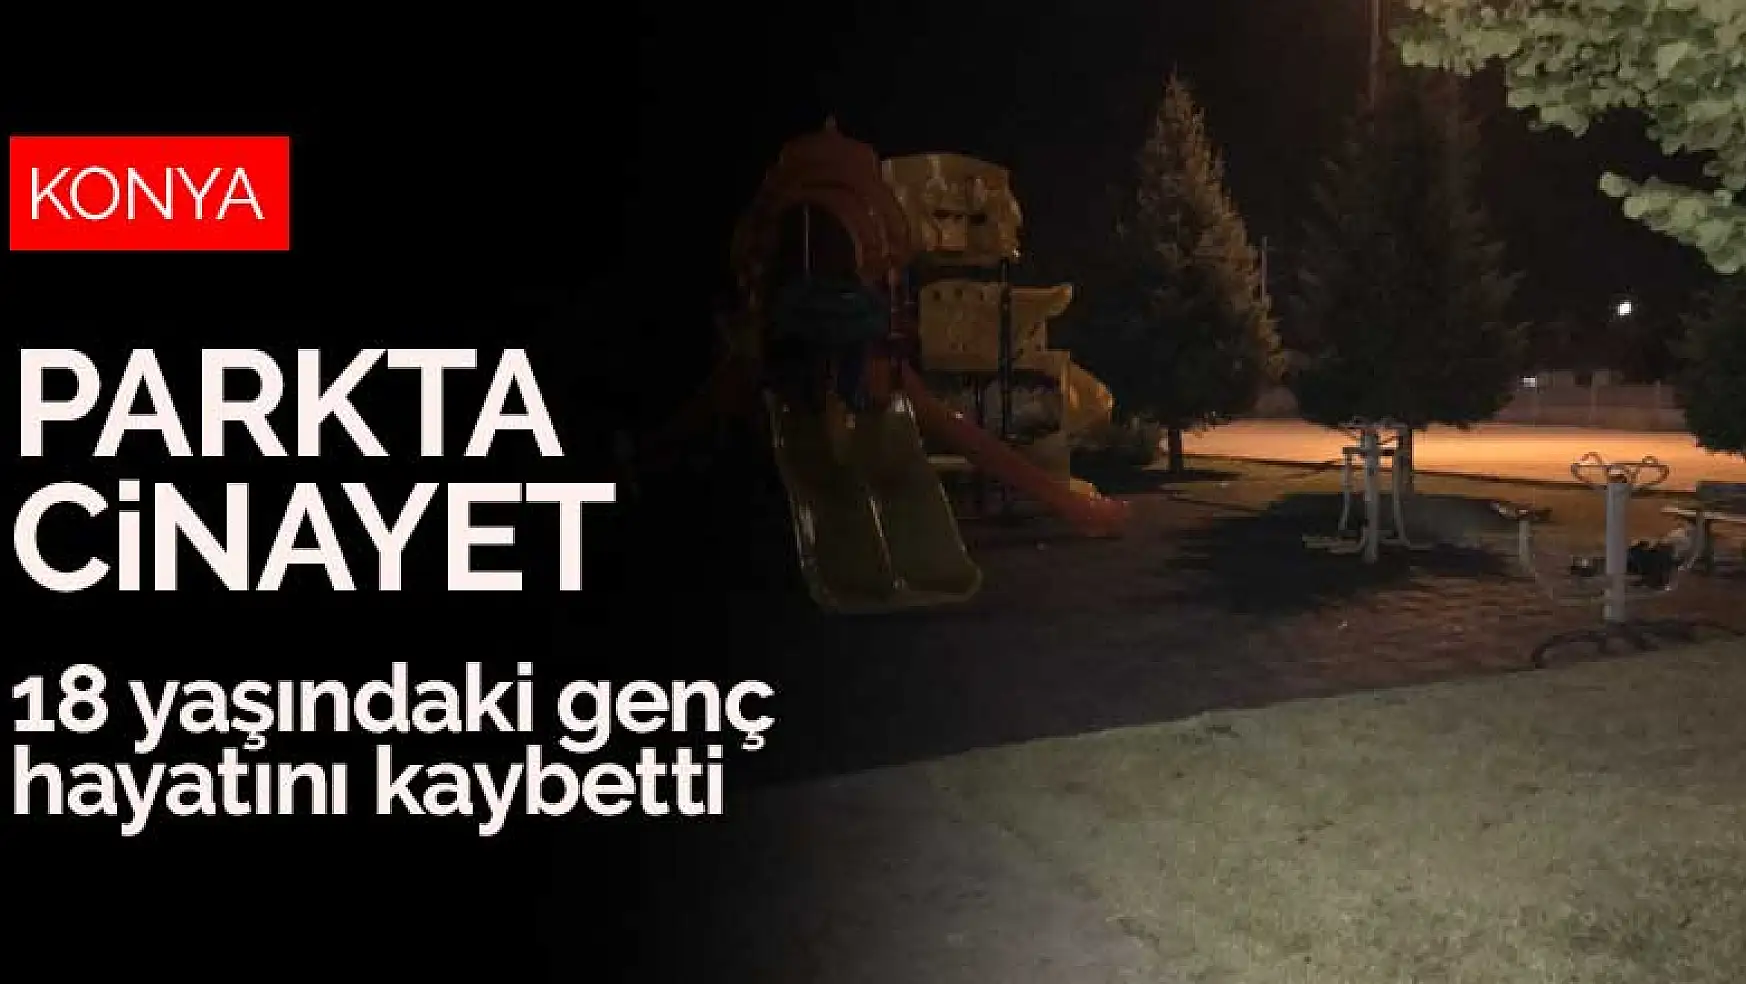 Konya'da kız meselesi yüzünden çıkan kavga parkta cinayetle sonuçlandı